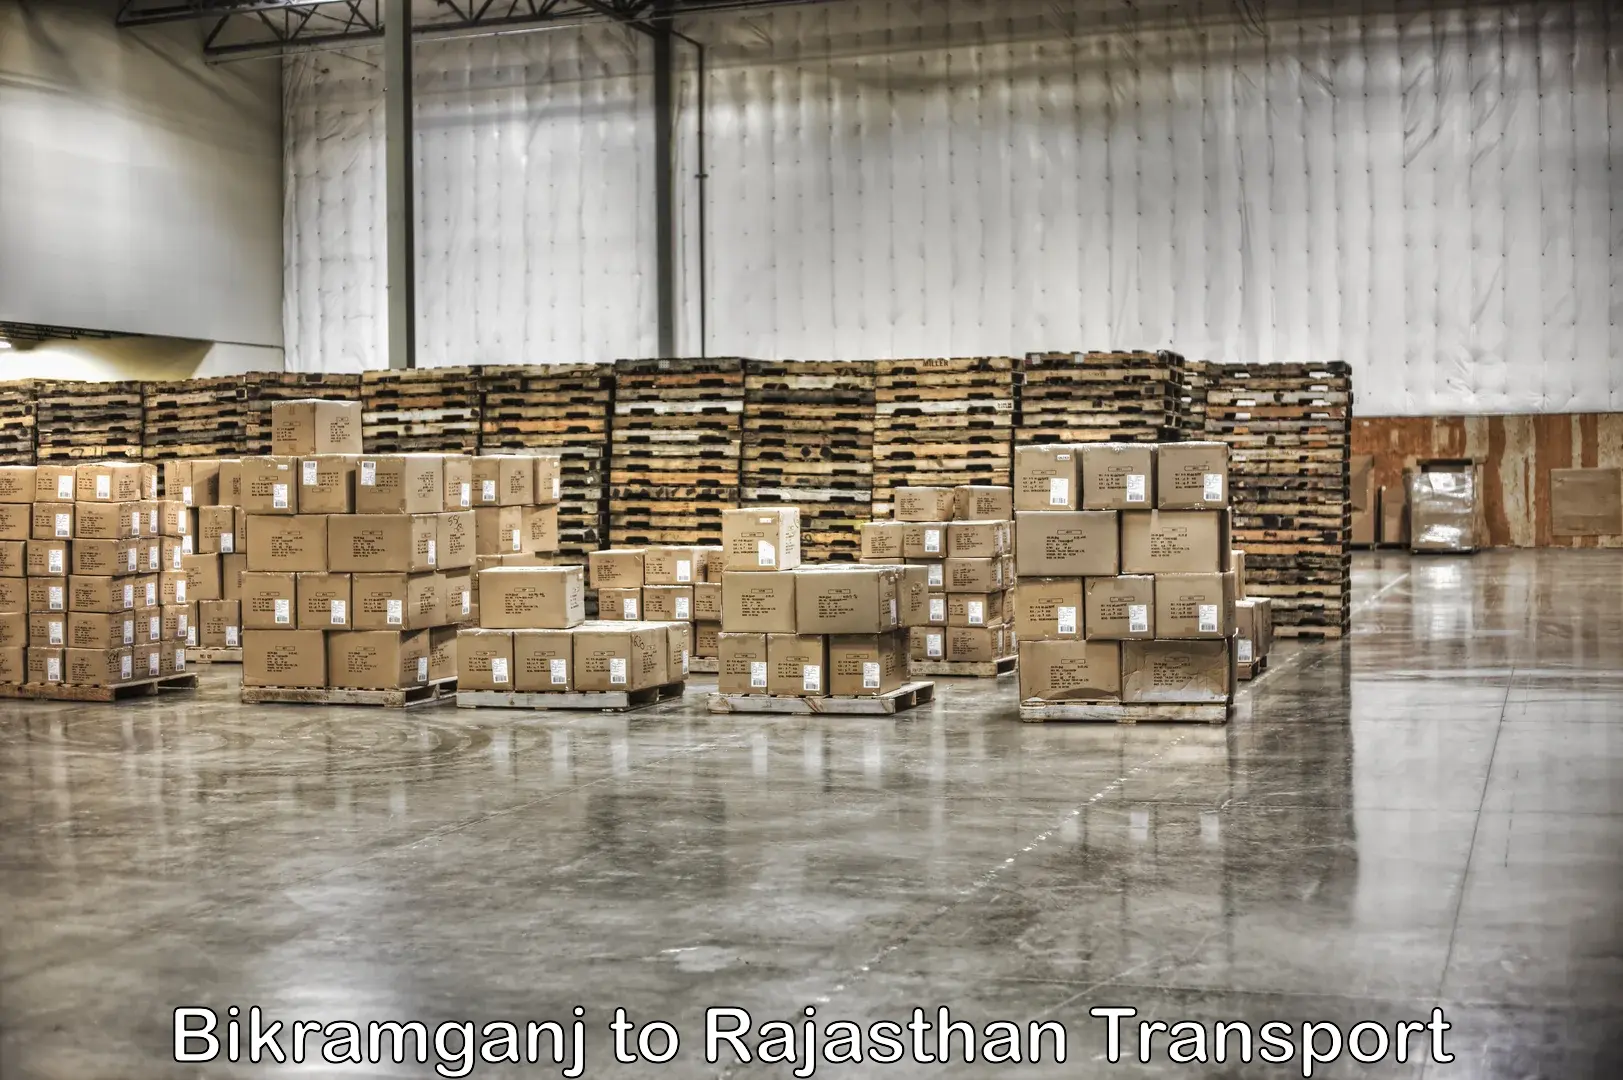 Container transport service Bikramganj to Jaipur